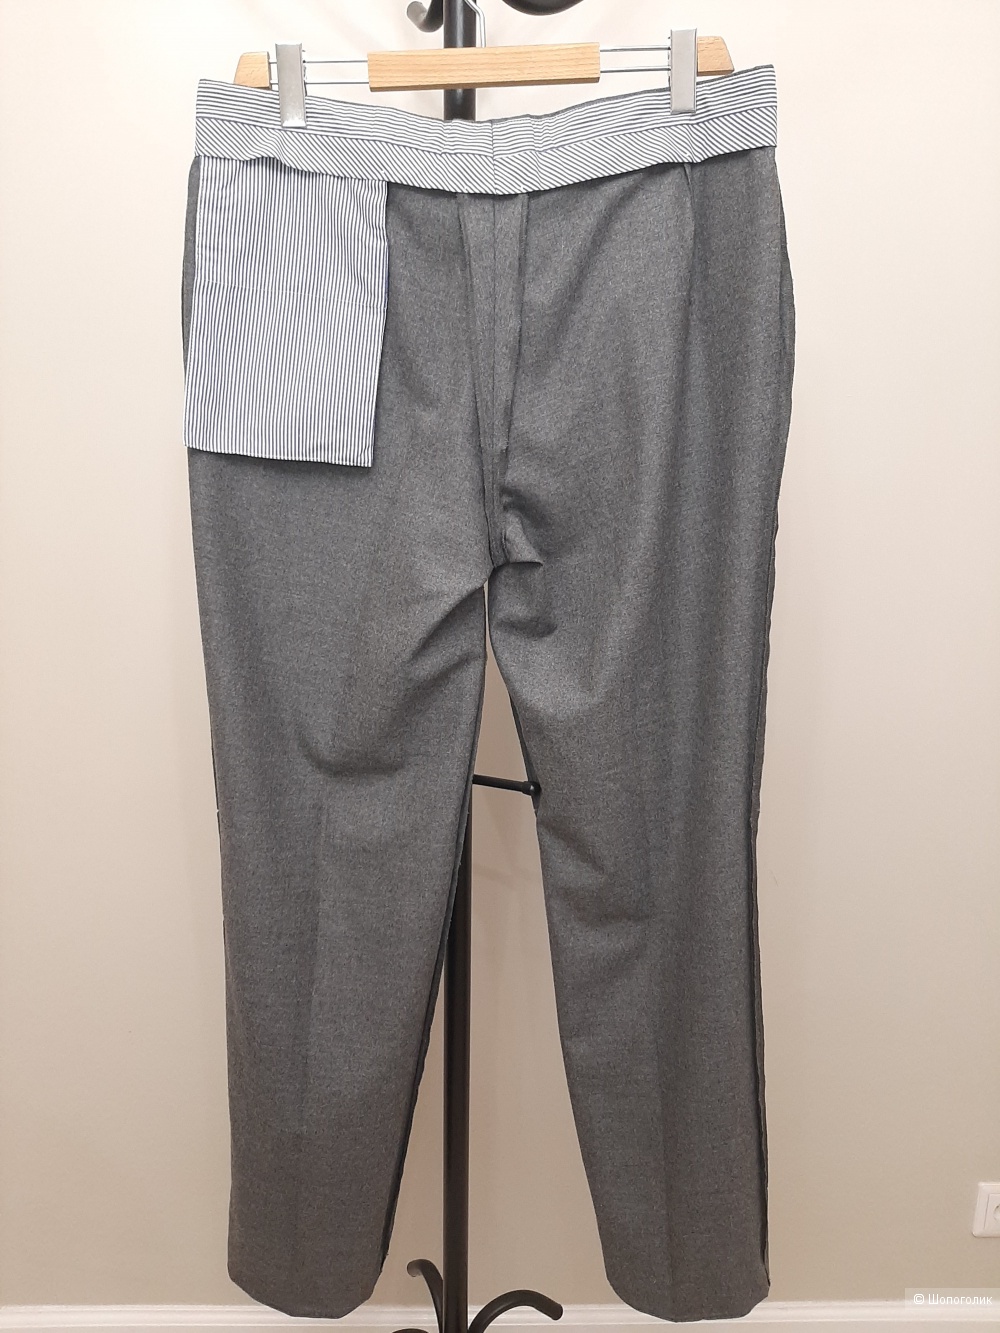 Мужские брюки из шерстяной фланели Rubinacci, XXL